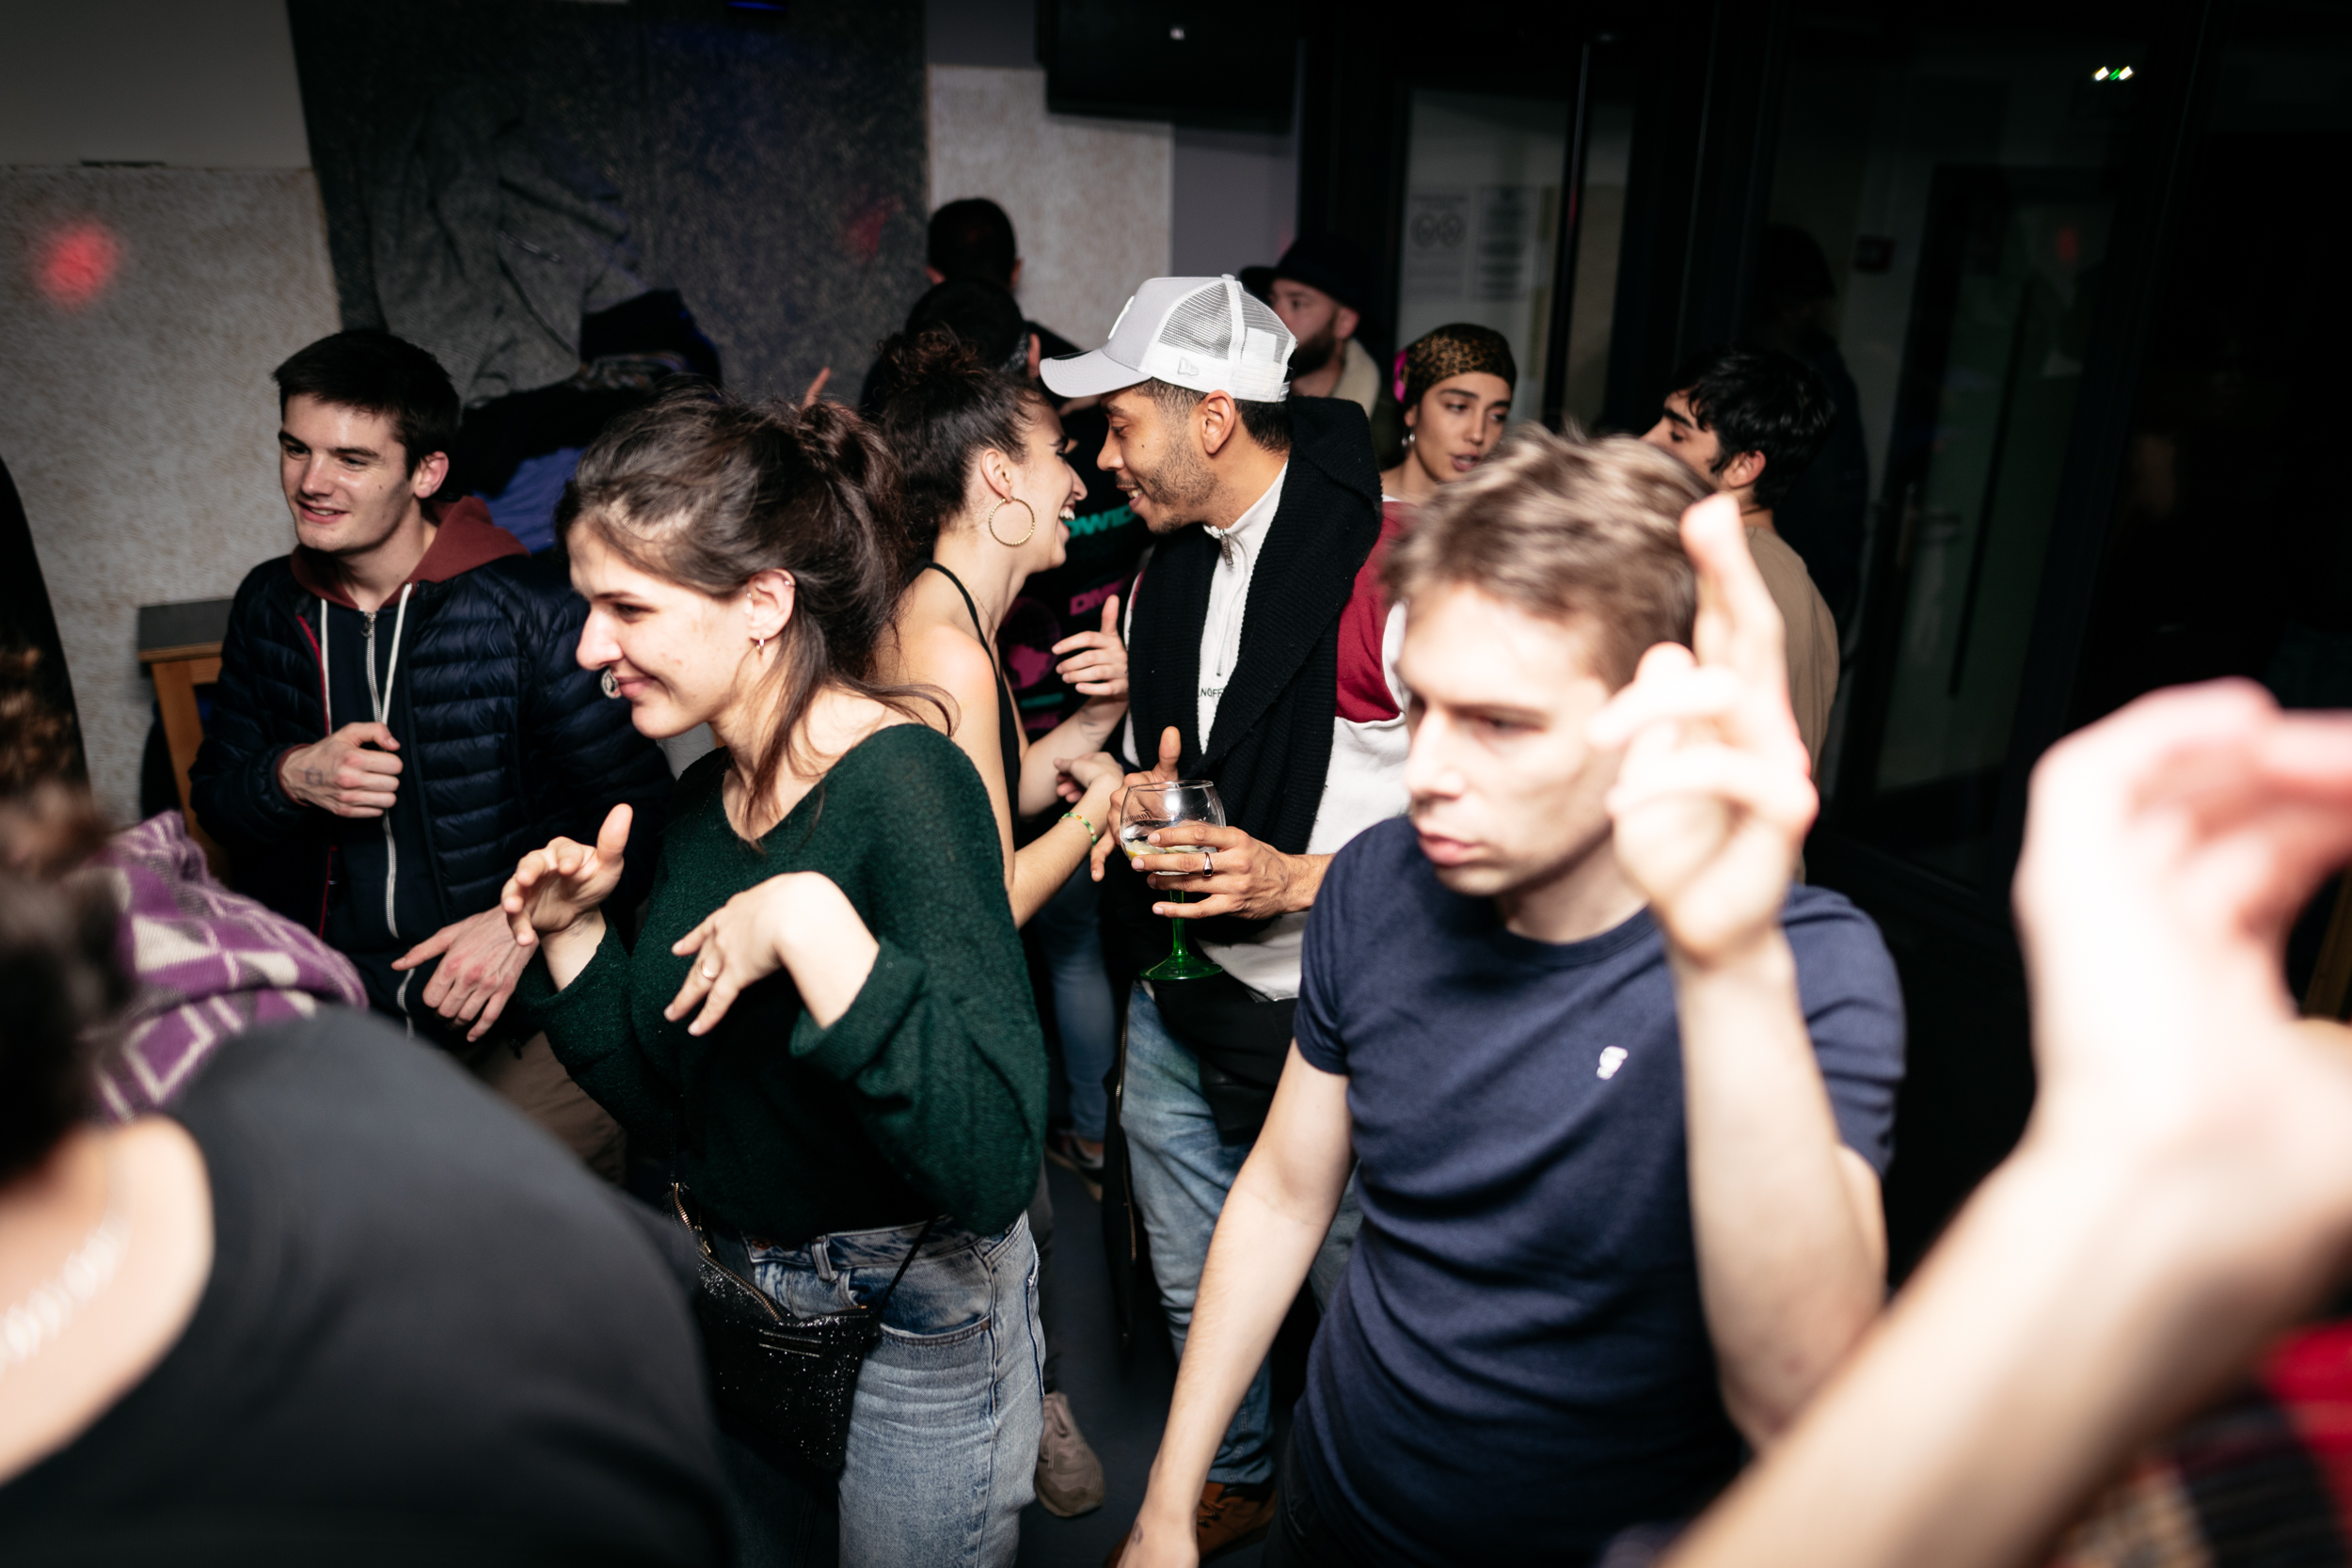 Photo des personnes dansant dans le bar.